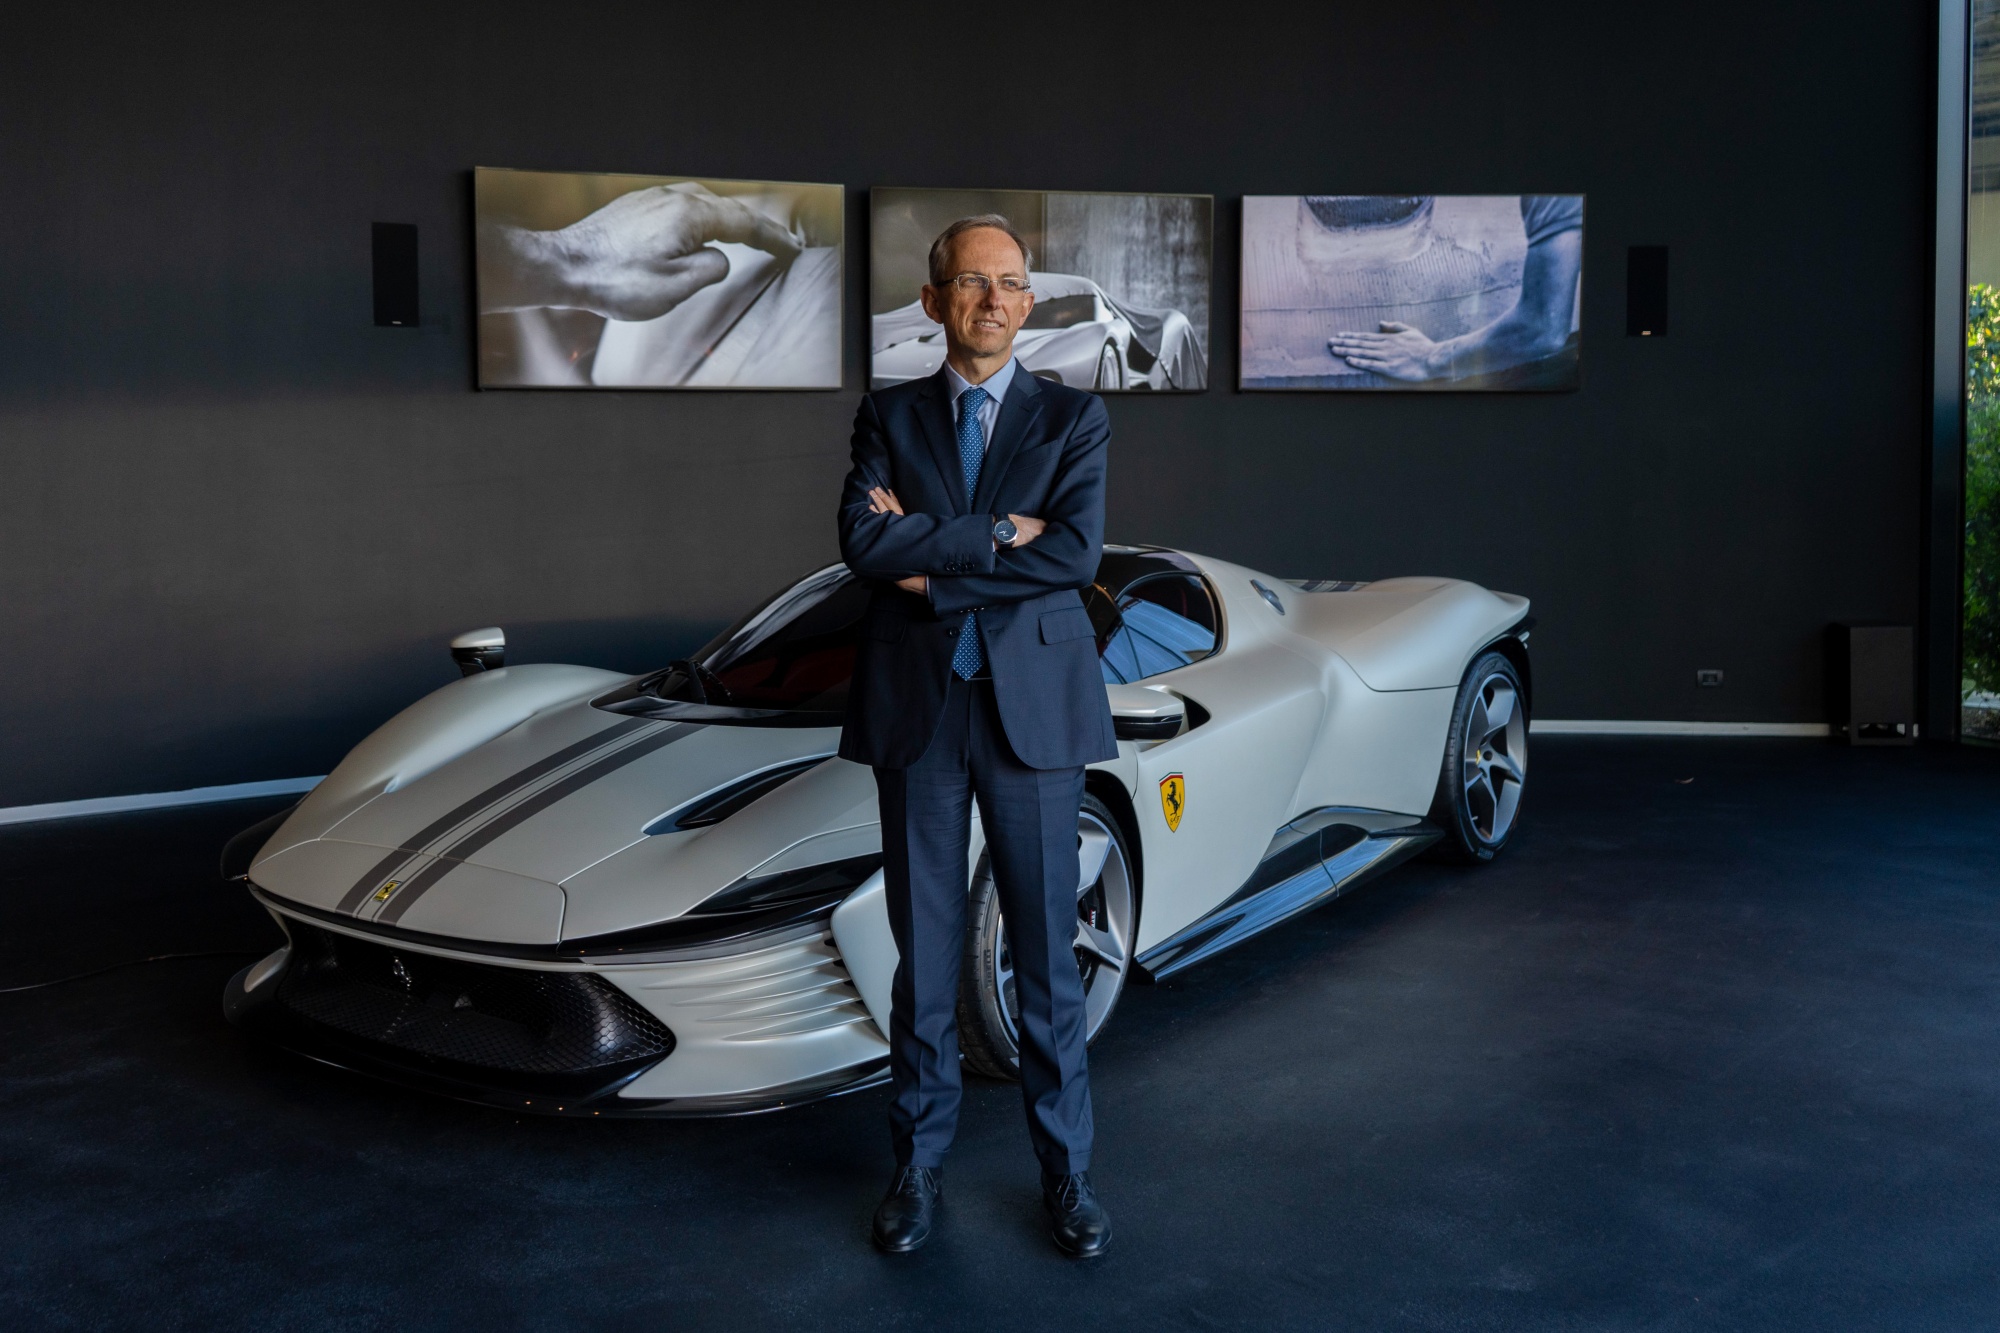 Ferrari dưới thời CEO Benedetto Vigna: Tự định vị là công ty xa xỉ, xây dựng thương hiệu dựa trên sự khan hiếm, 1 năm chỉ bán hơn 10.000 xe, hiện giá trị hơn cả Ford